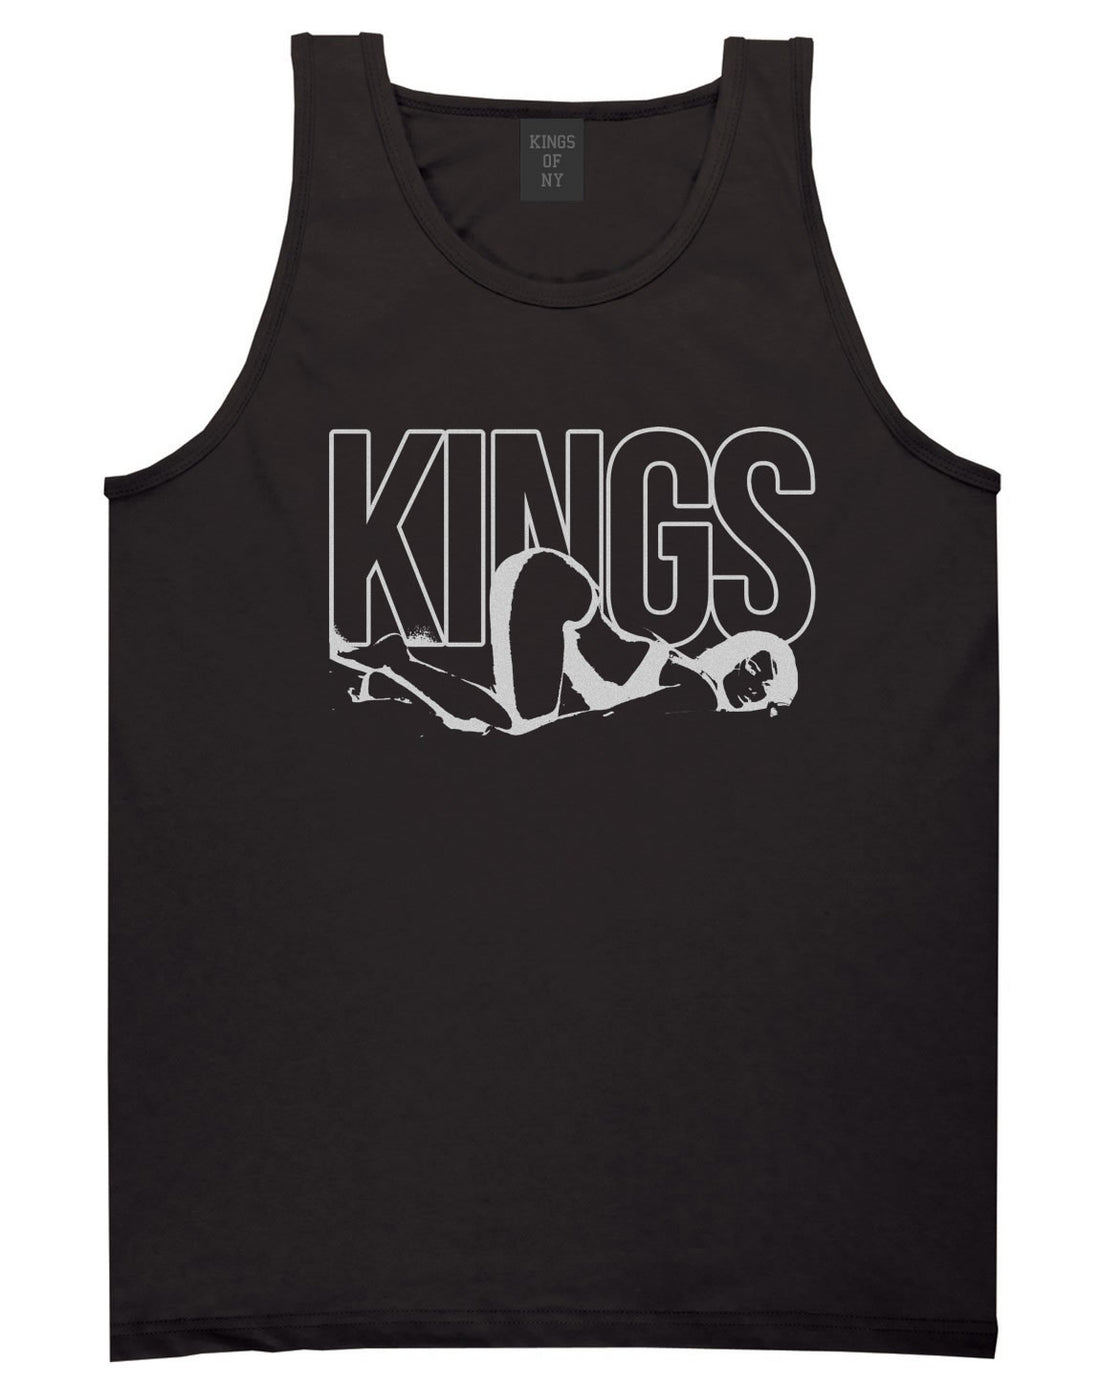 Kings Girl Streetwear Tank Top in Black by Kings Of NY